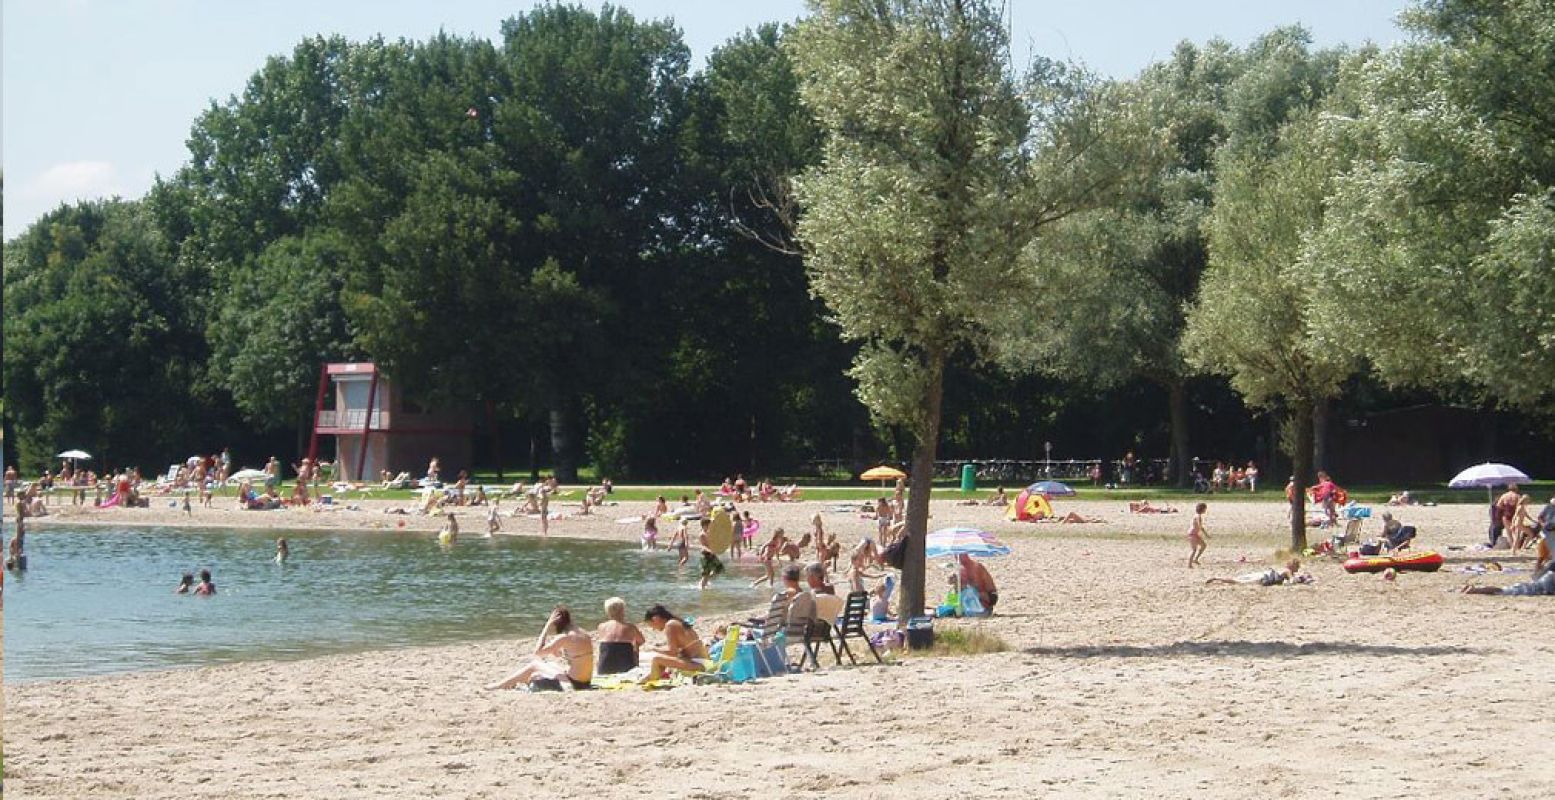 Lekker aan het strand of op de ligweide liggen van recreatiegebied Berendonck. Foto: Leisurelands.